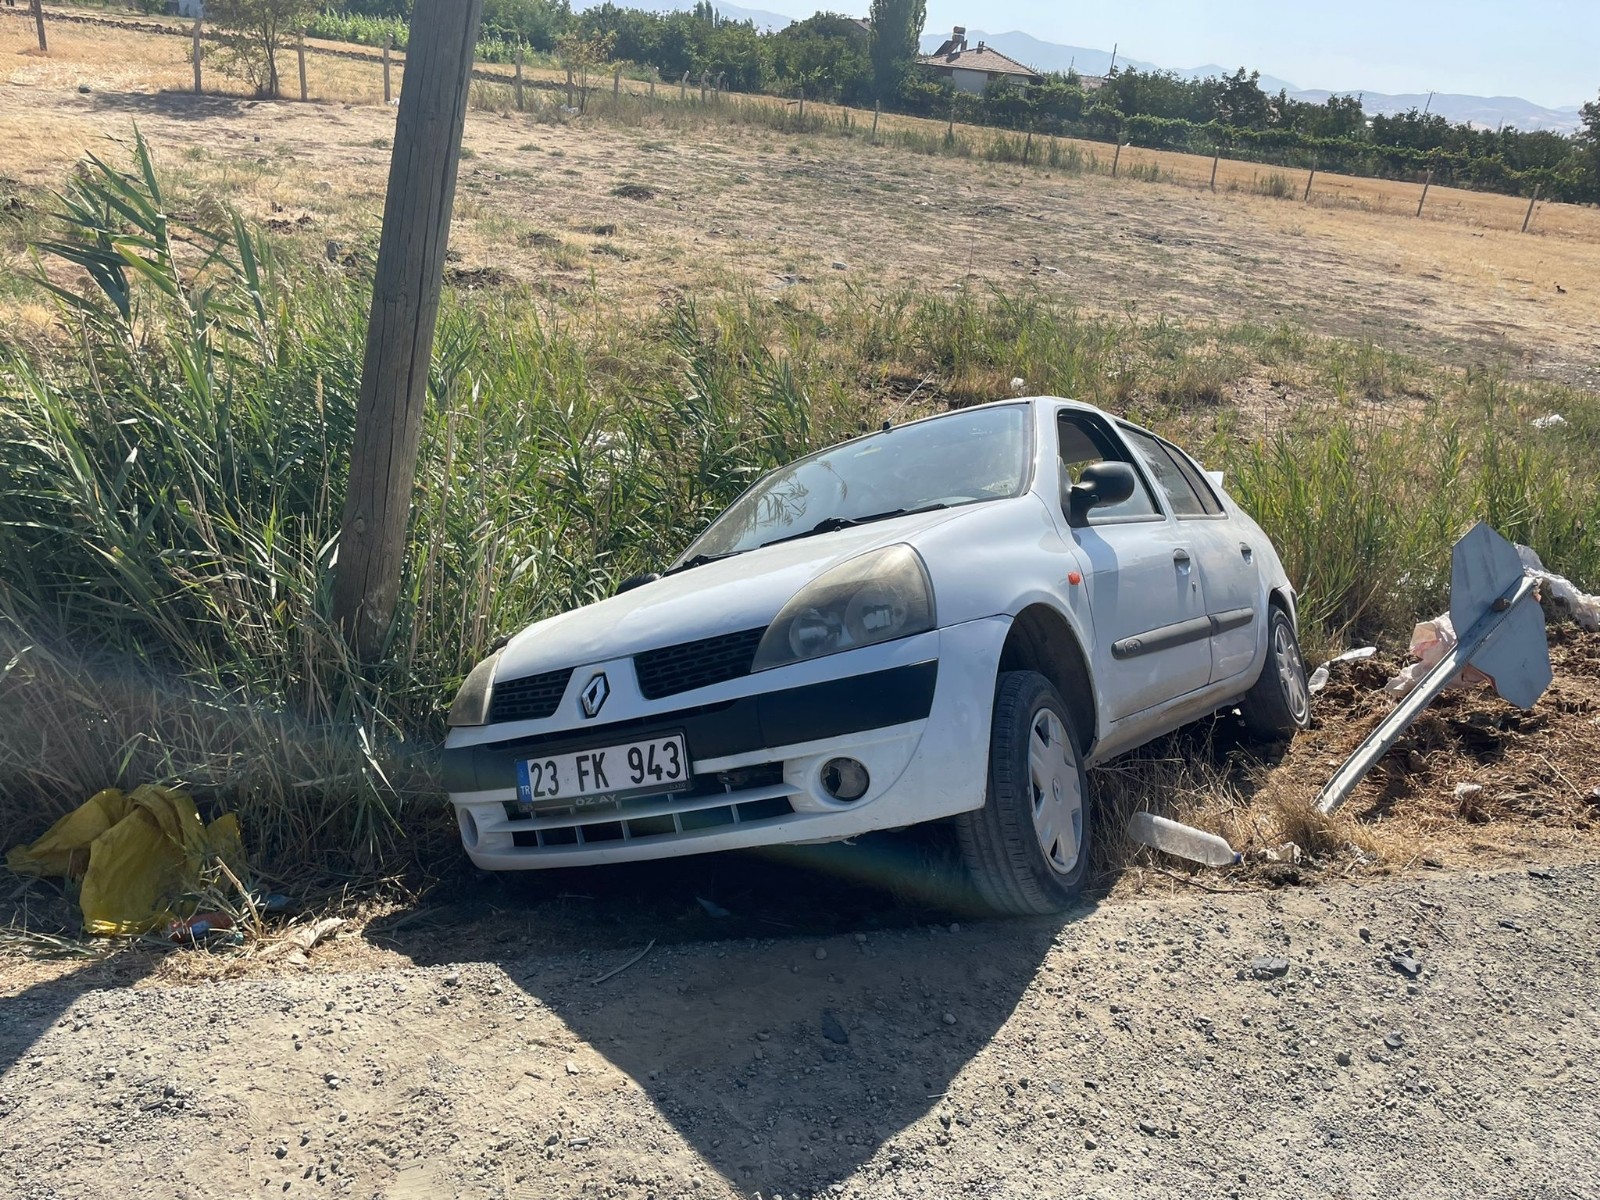 Elazığ’da trafik kazası: 4 yaralı #elazig